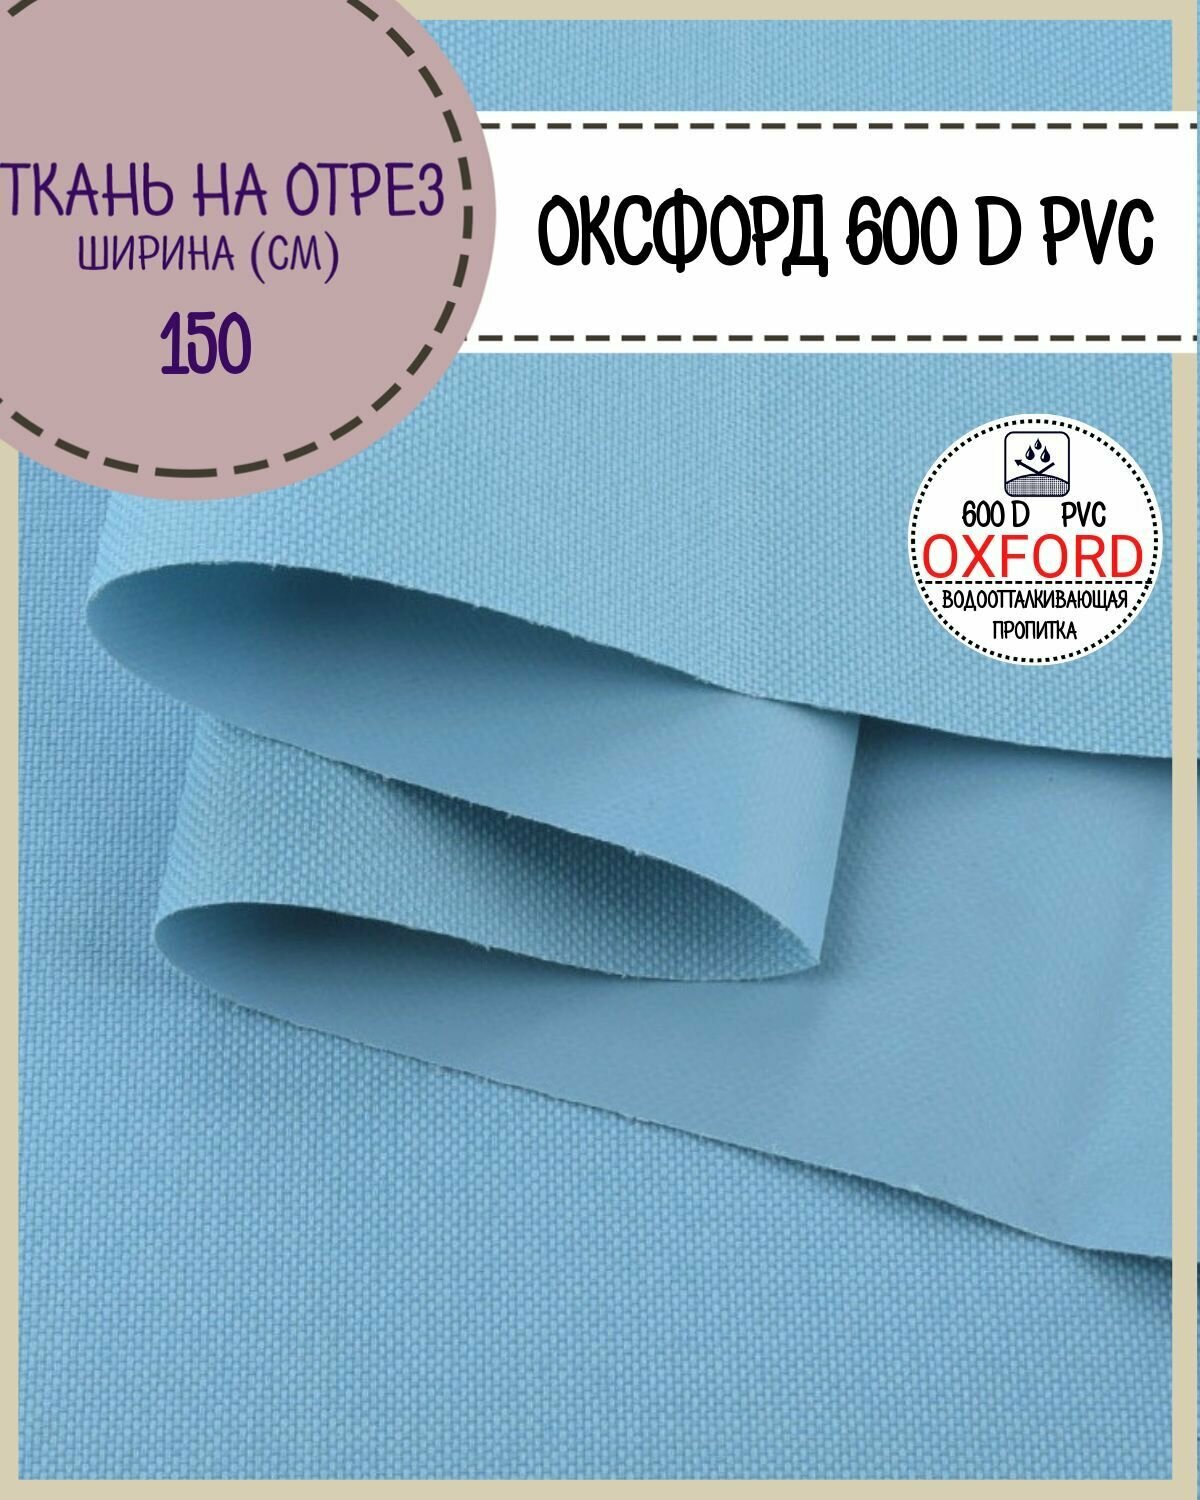 Ткань Оксфорд Oxford 600D PVC (ПВХ), водоотталкивающая, цв. голубой, на отрез, цена за пог. метр